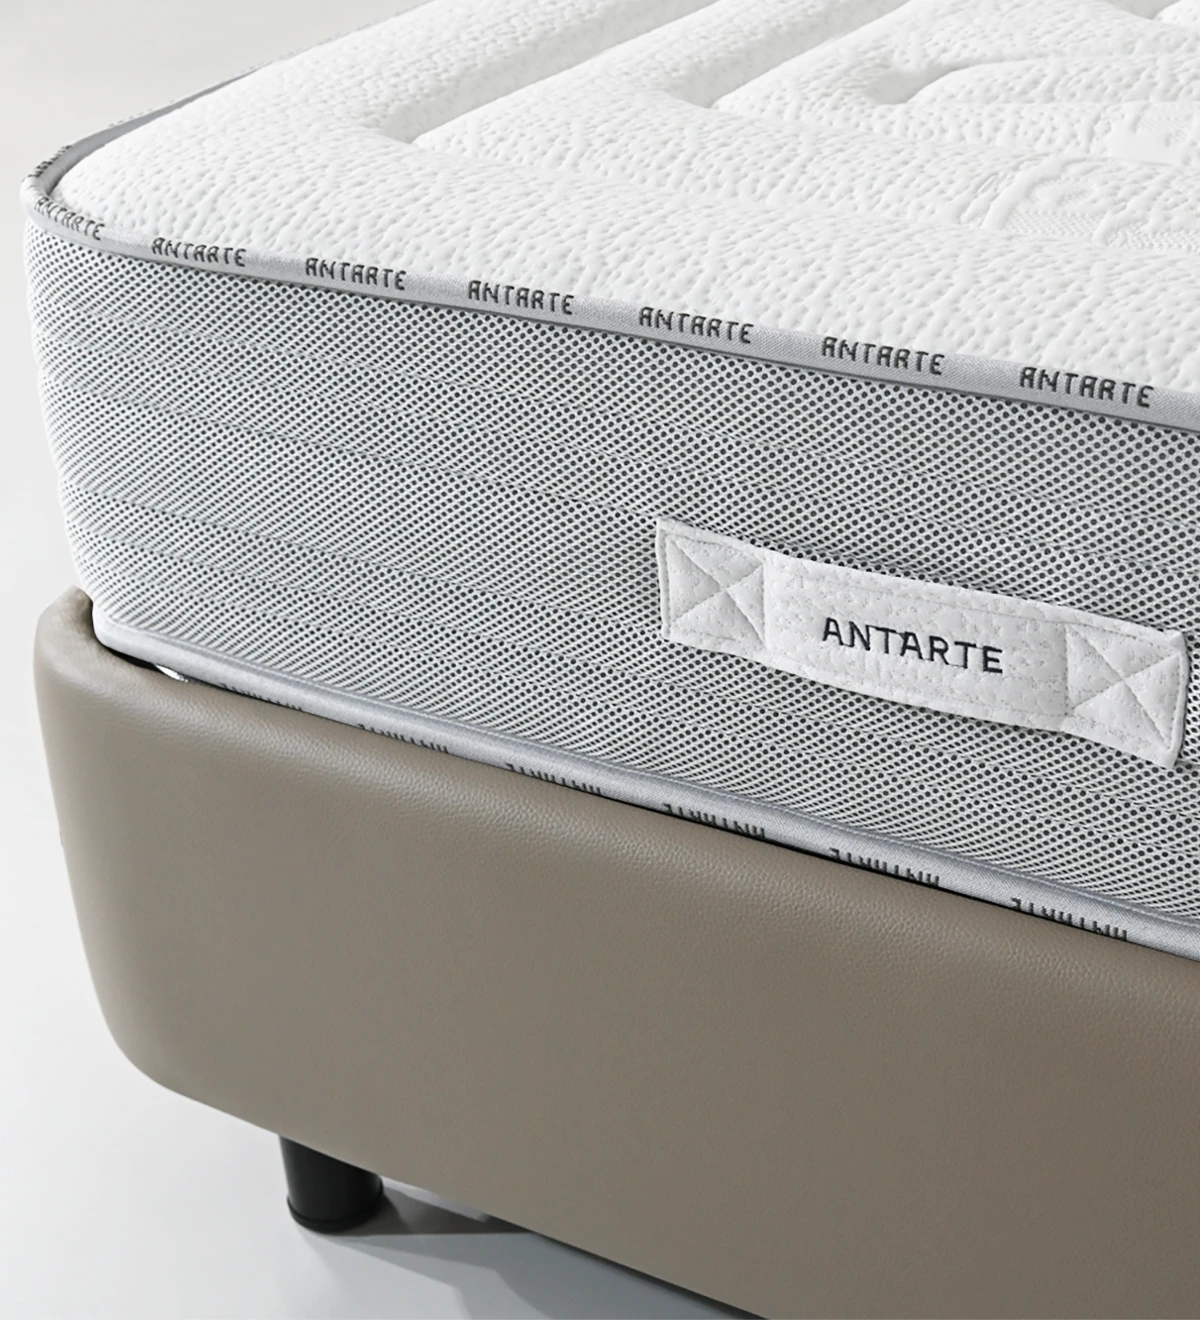 Matelas pour lits doubles et simples avec une densité, une durabilité et un confort accrus.